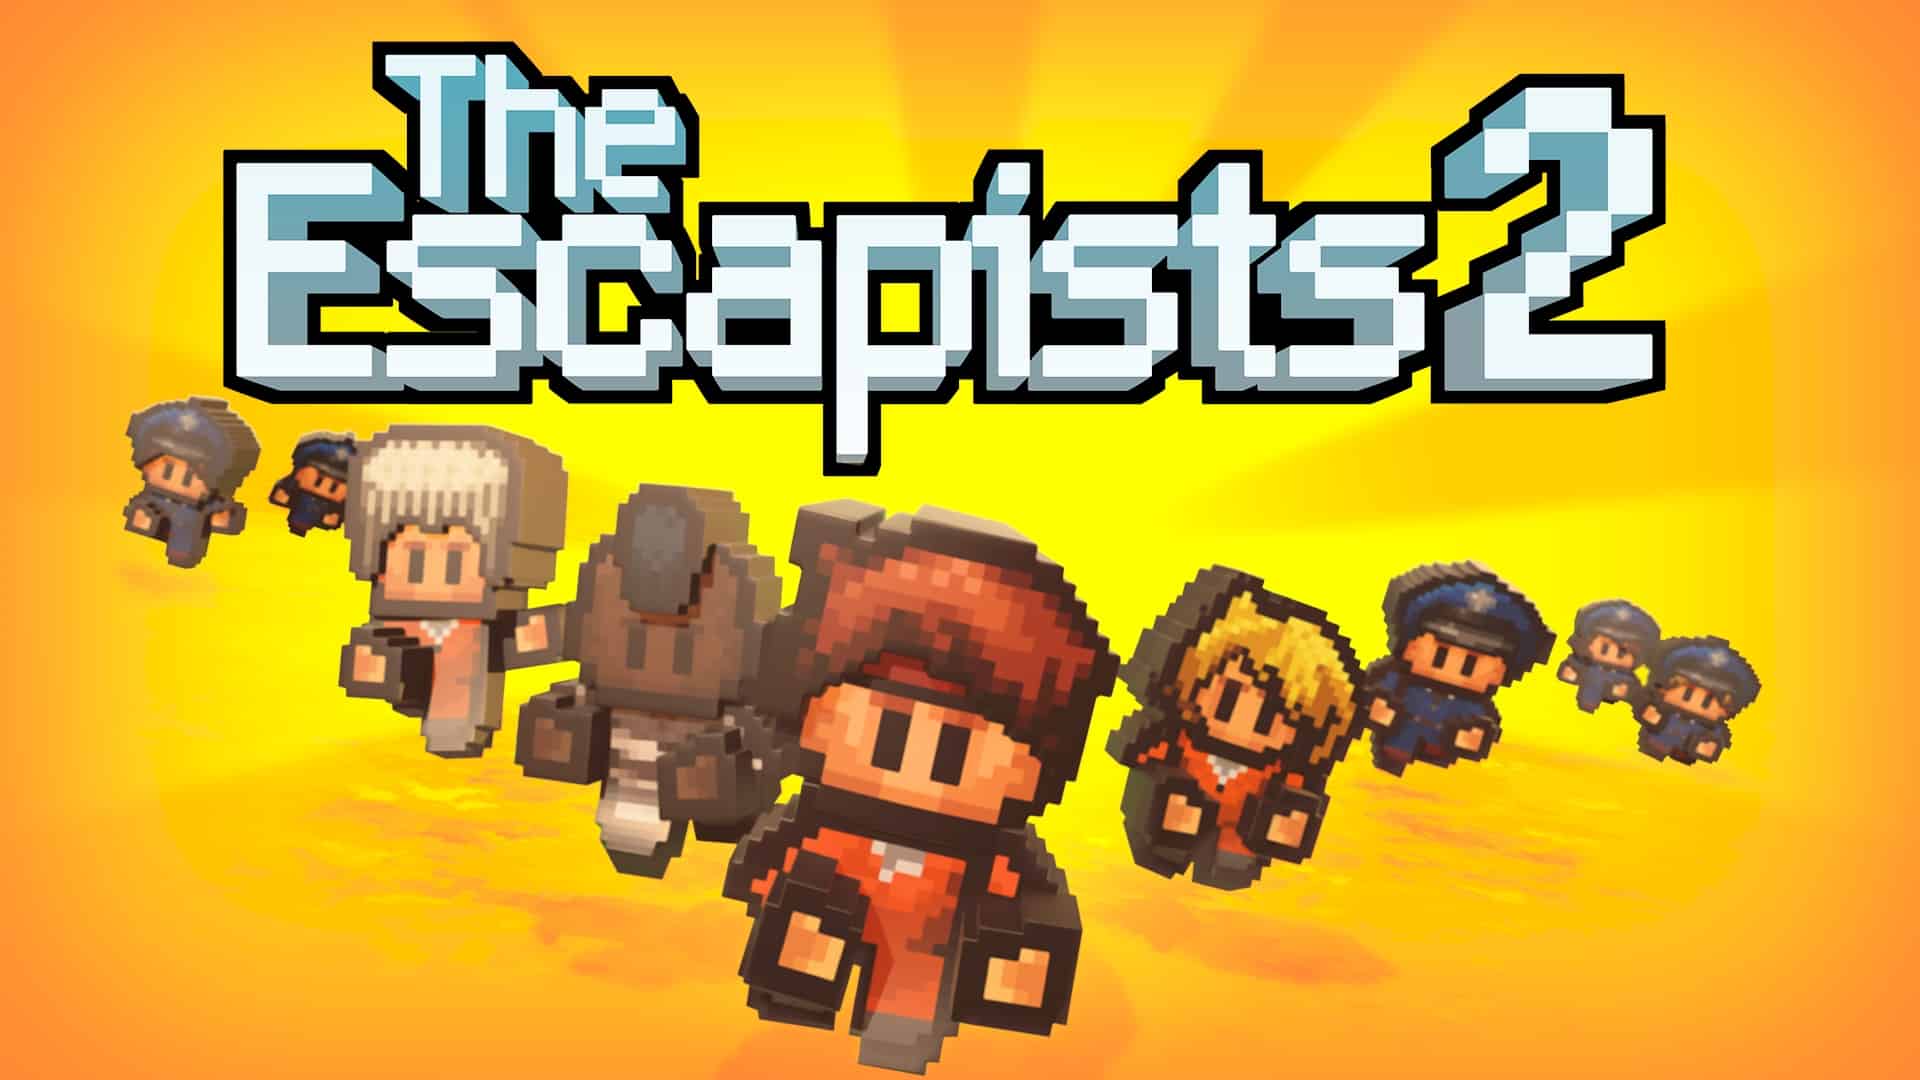 The Escapist2 2dゲームながら本格的な脱獄プレイが楽しめる最新pcゲーム マルチプレイも可能なオンラインゲームです ネトゲ廃人が厳選したpcオンラインゲームおすすめ Mmorpg Fps Pcゲームの人気作